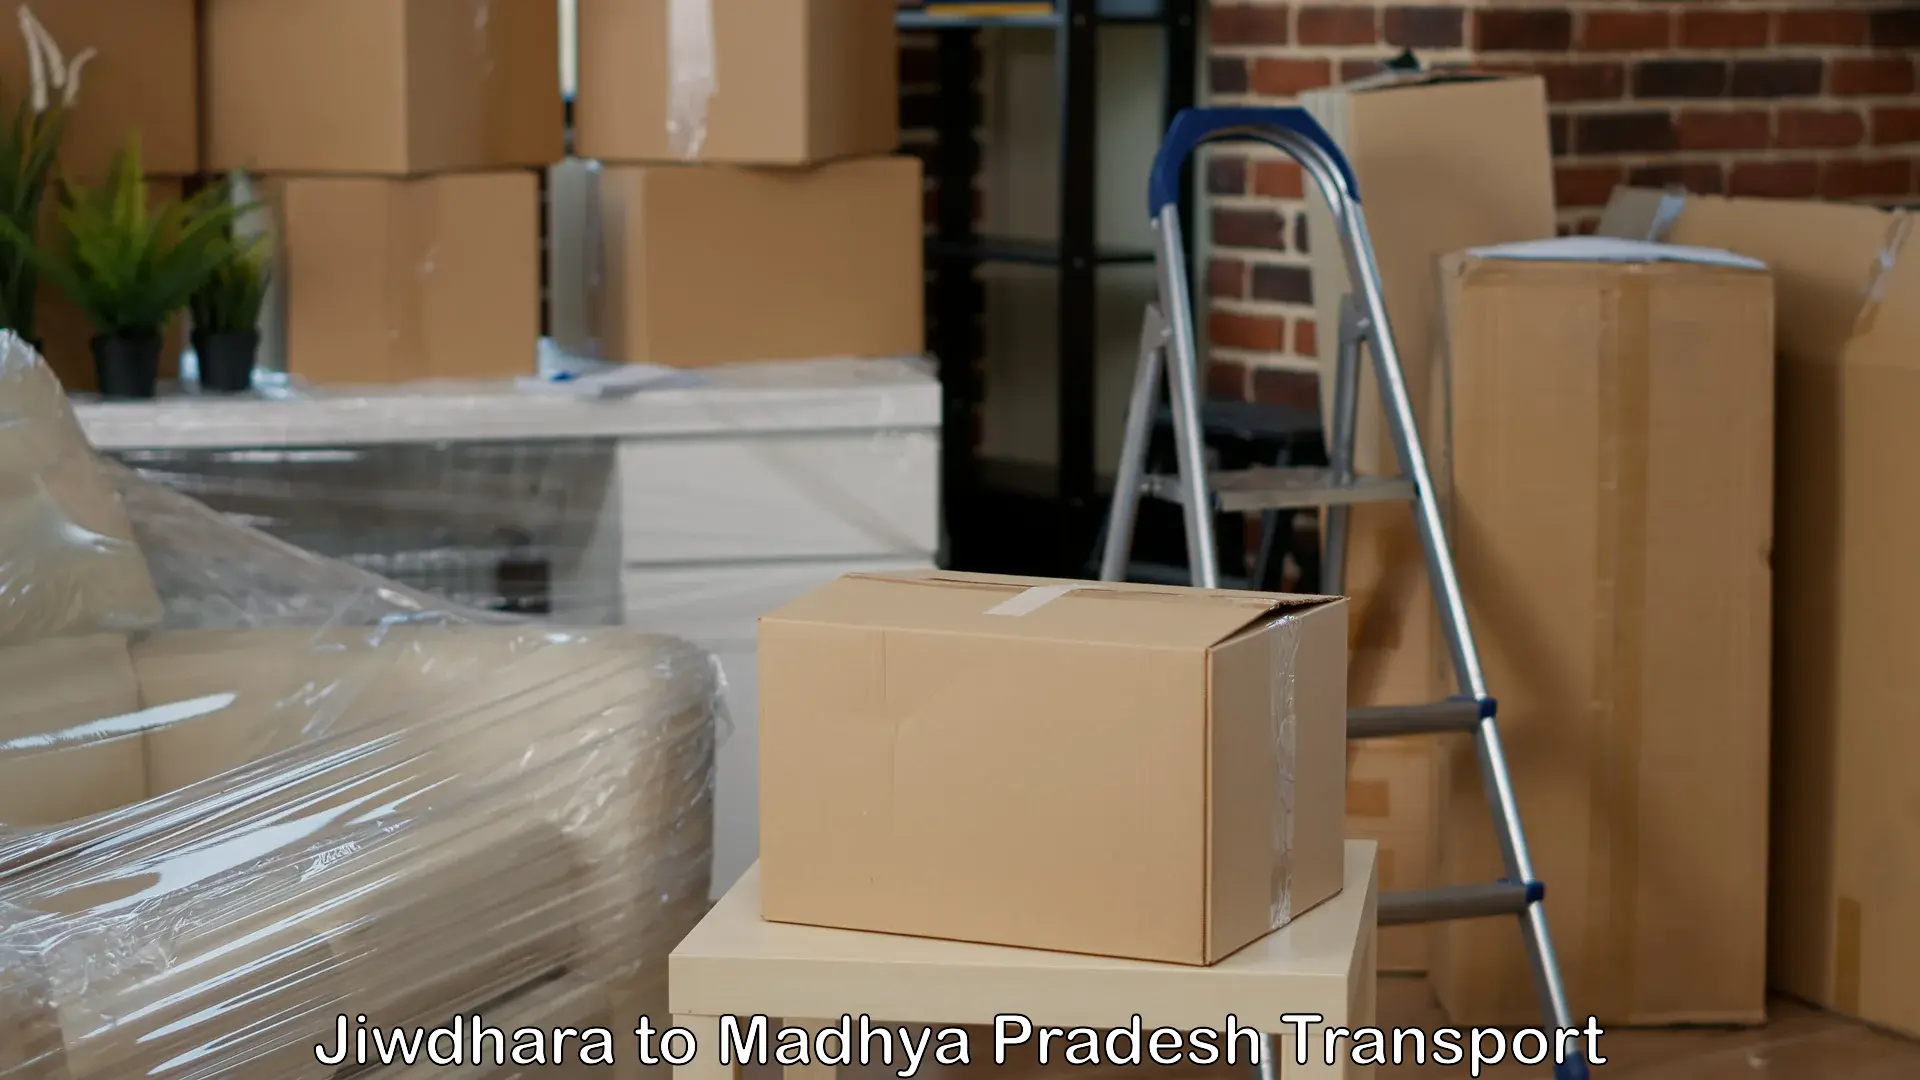 Furniture transport service Jiwdhara to Chapda